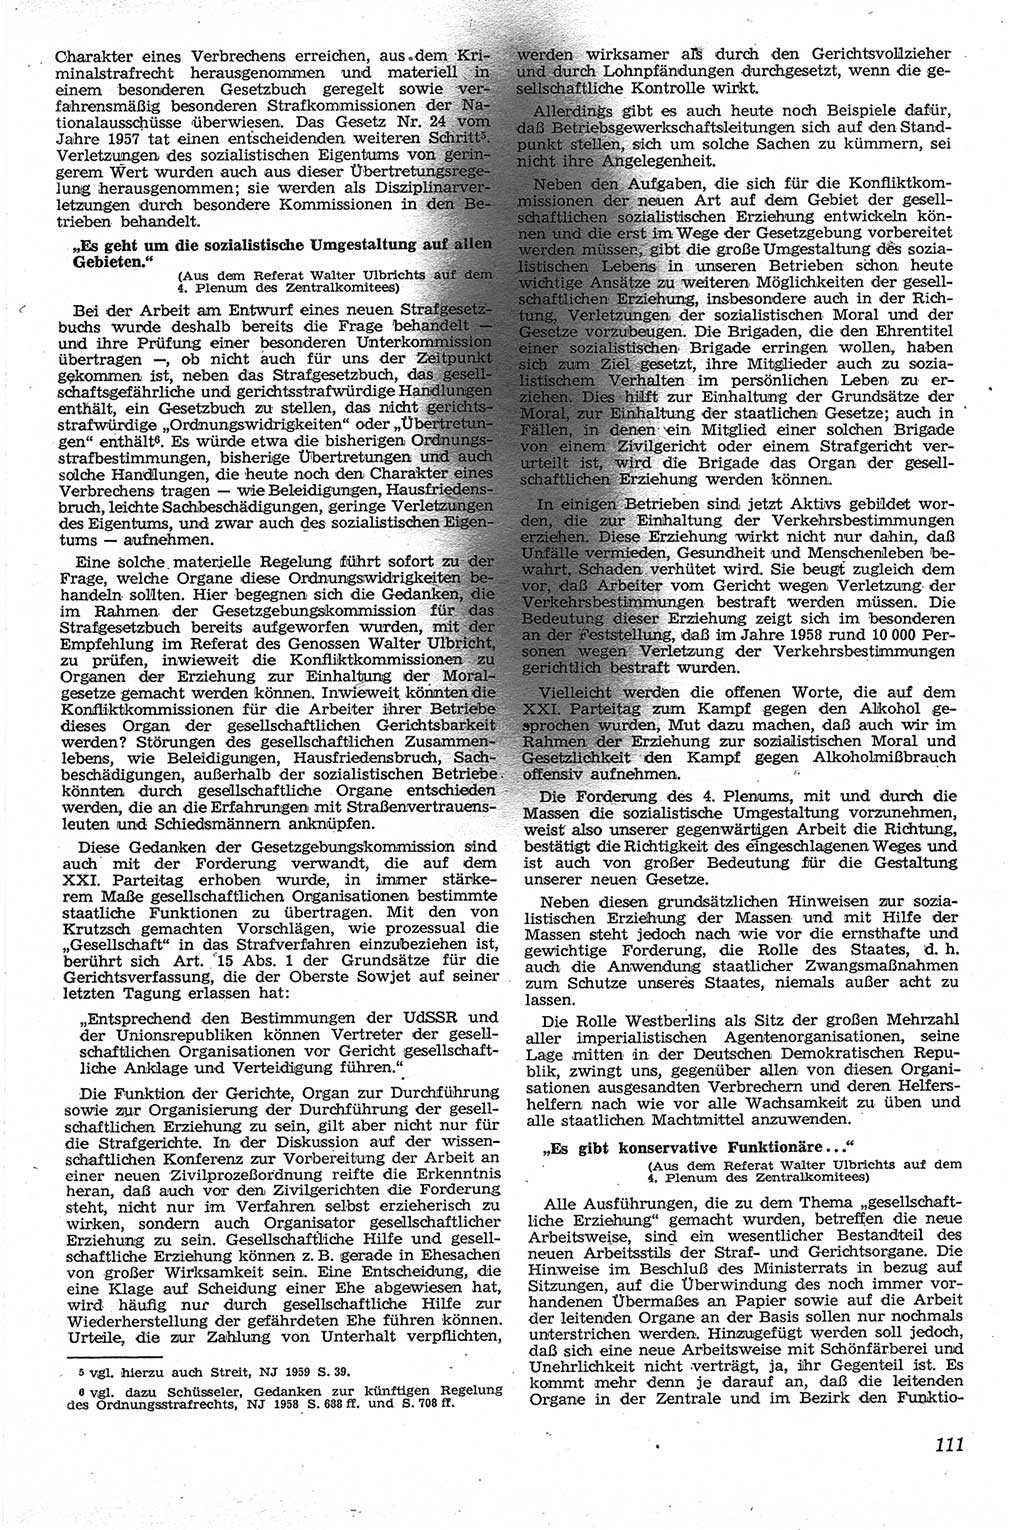 Neue Justiz (NJ), Zeitschrift für Recht und Rechtswissenschaft [Deutsche Demokratische Republik (DDR)], 13. Jahrgang 1959, Seite 111 (NJ DDR 1959, S. 111)